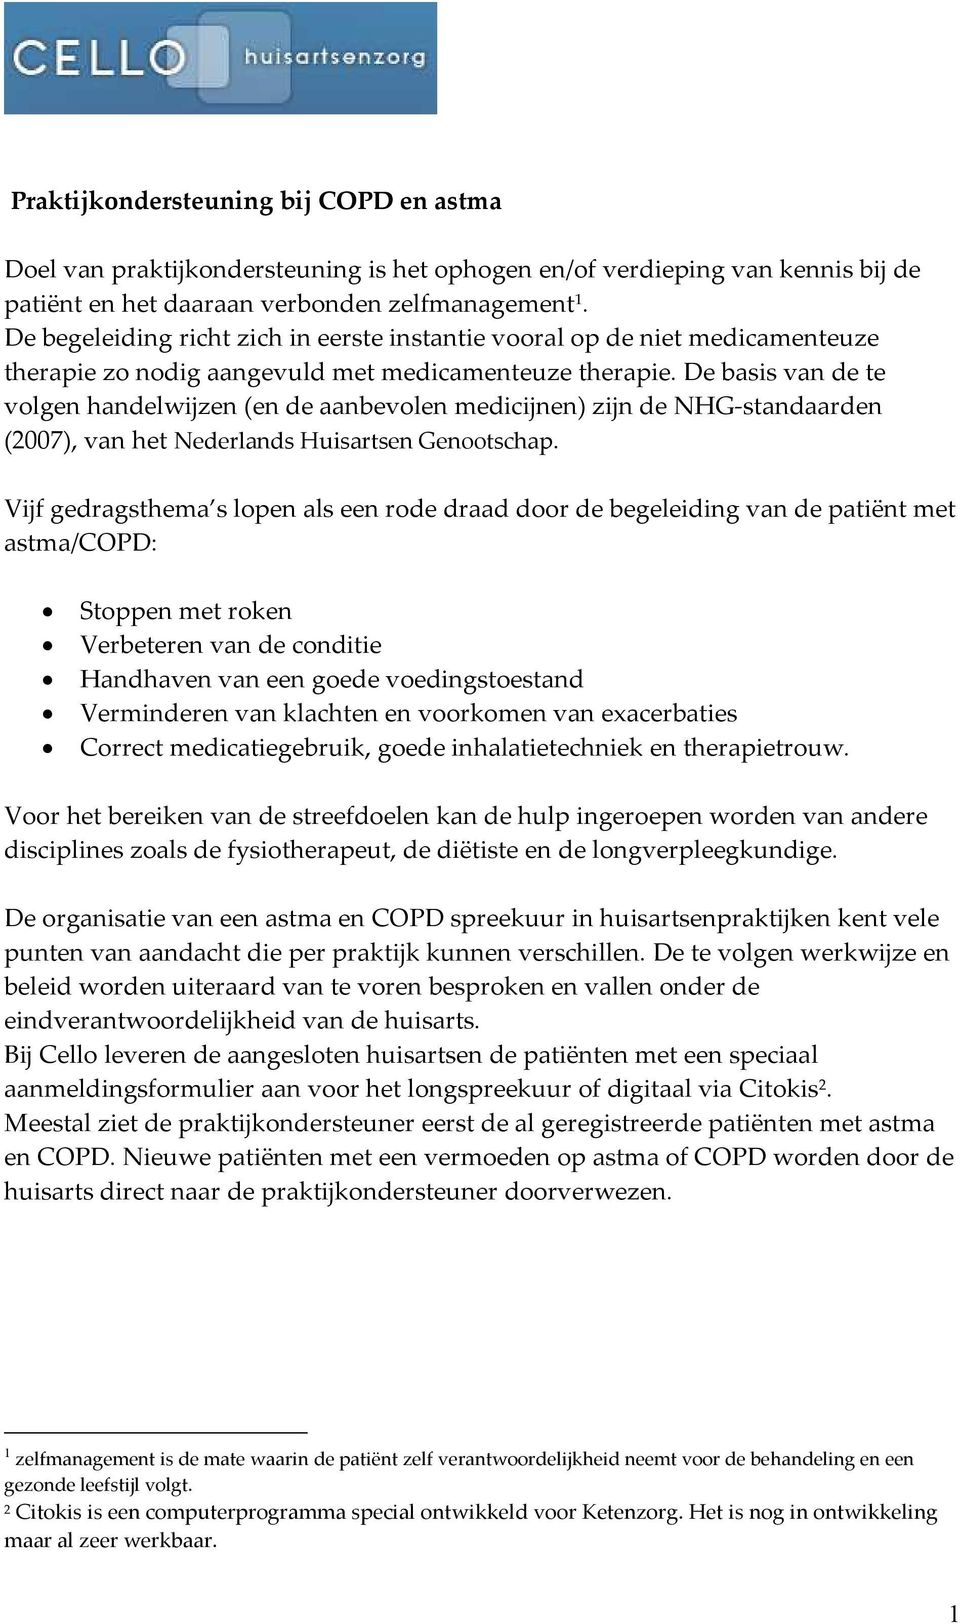 De basis van de te volgen handelwijzen (en de aanbevolen medicijnen) zijn de NHG-standaarden (2007), van het Nederlands Huisartsen Genootschap.